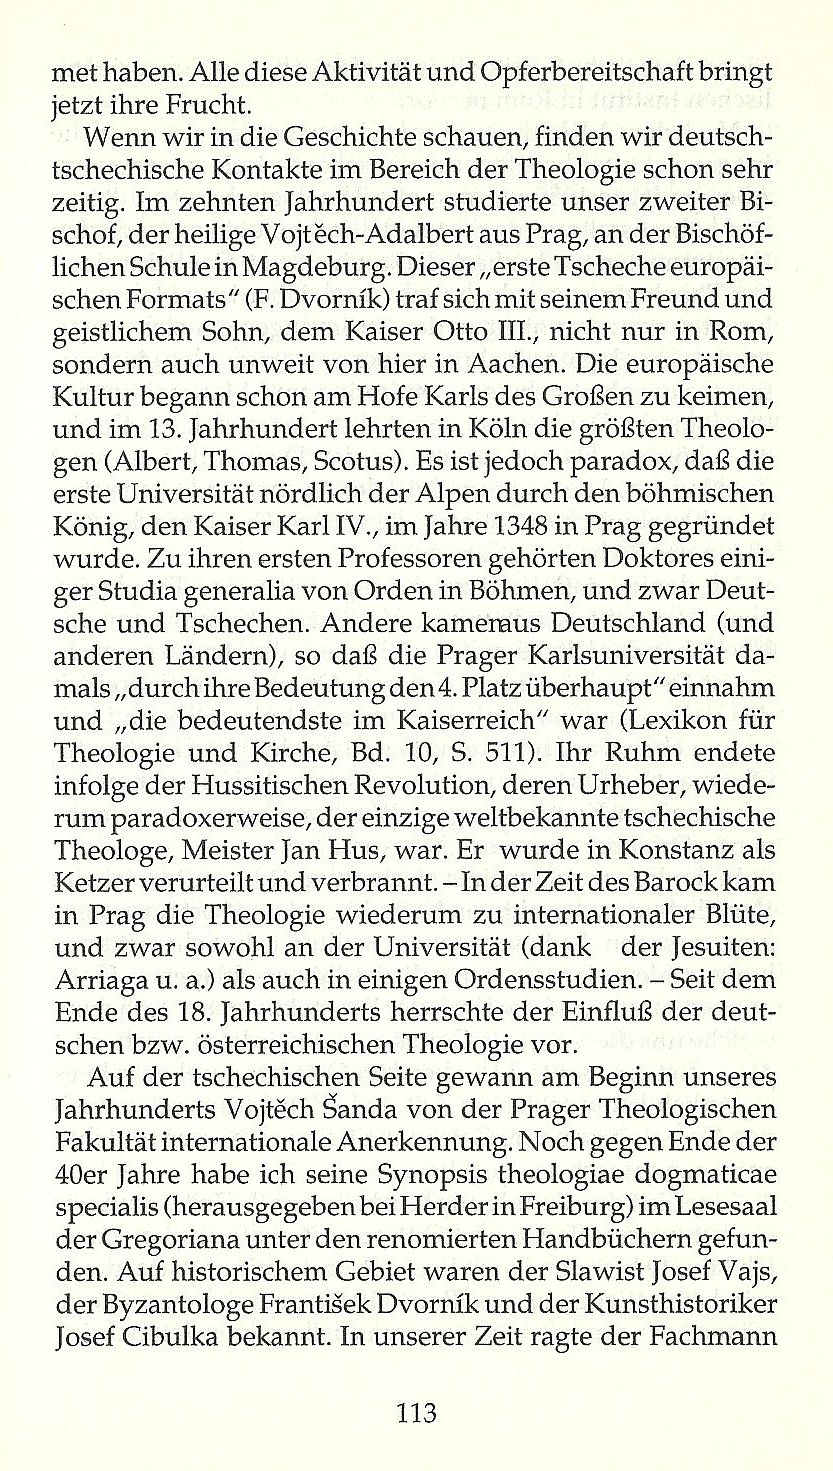 Wie Kirche nicht stirbt / Aus der Rede bei der Verleihung der Theologischen Ehrendoktorwürde in Bonn am 4. 5. 1991 / Seite 113